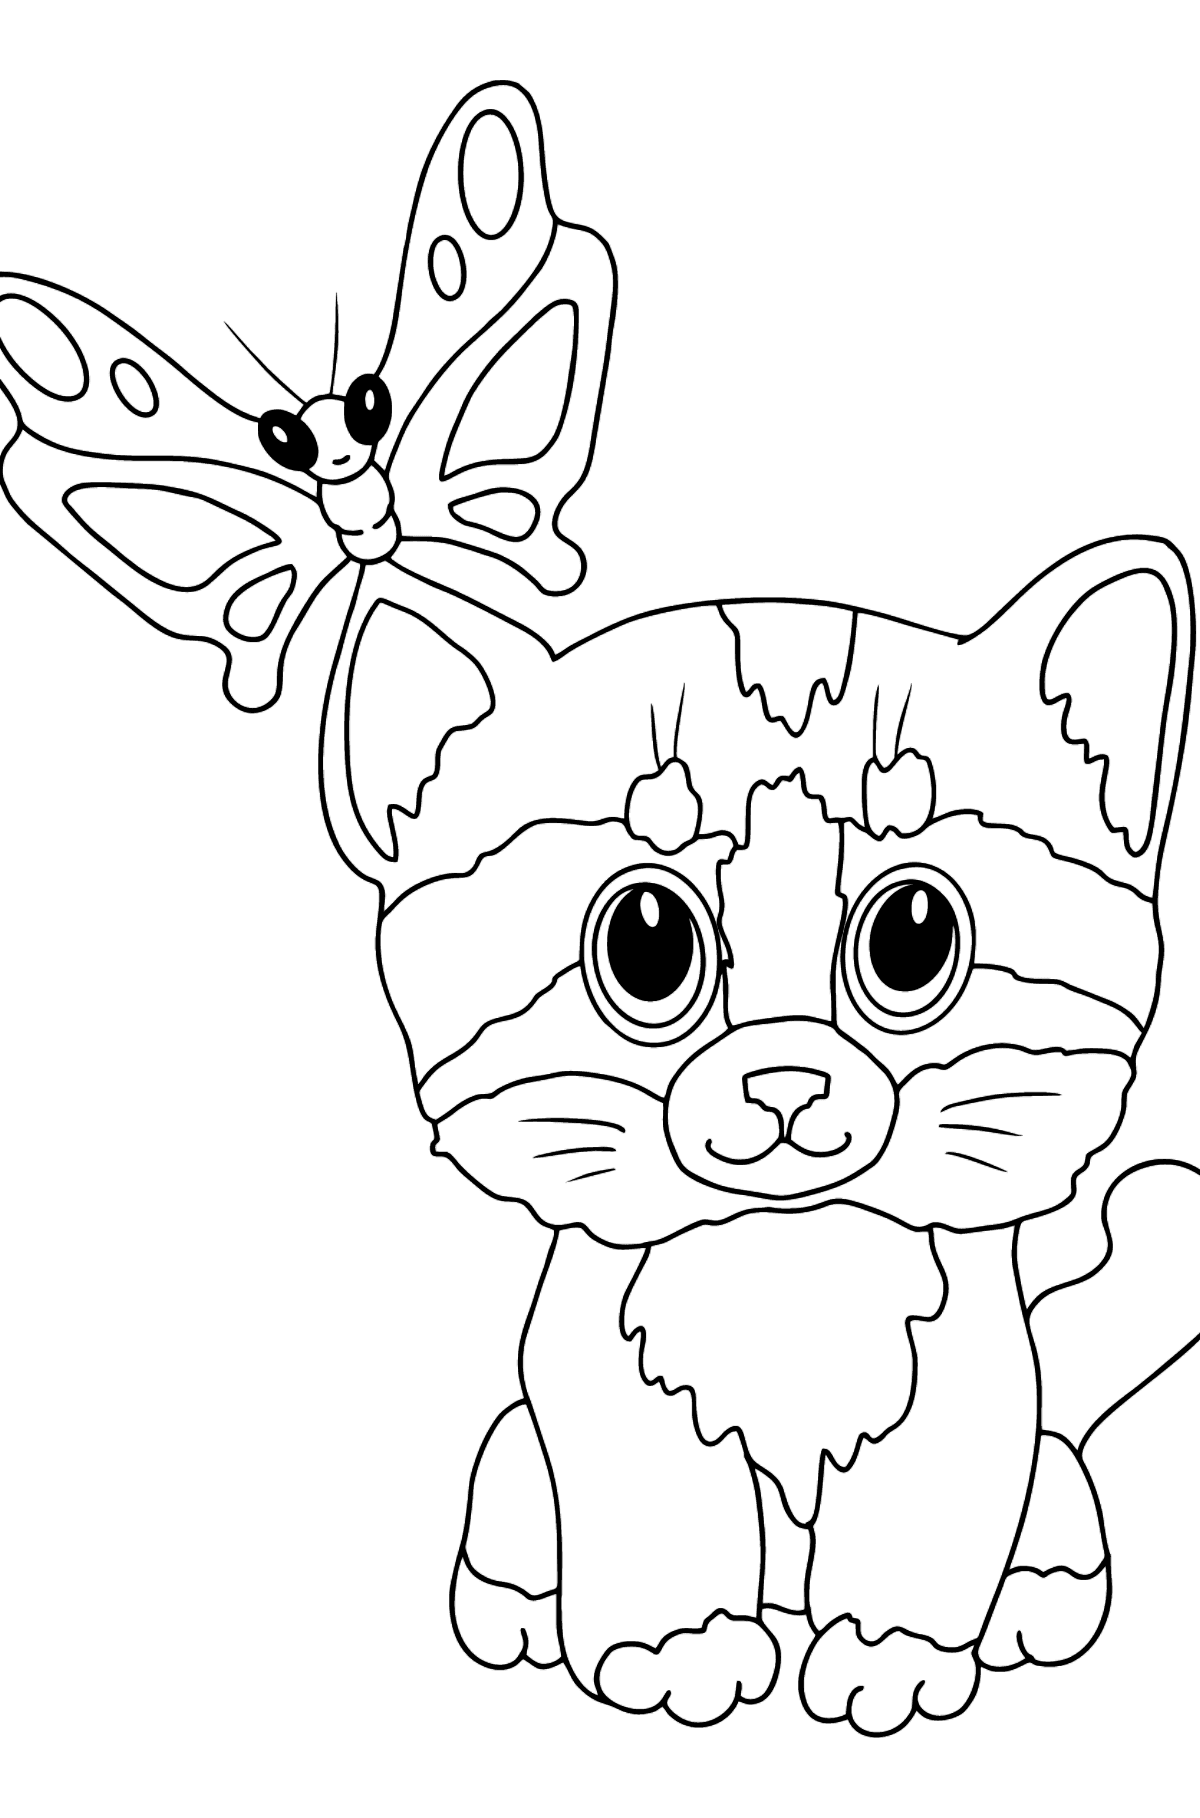 Раскраска котенок и бабочка - Картинки для Детей